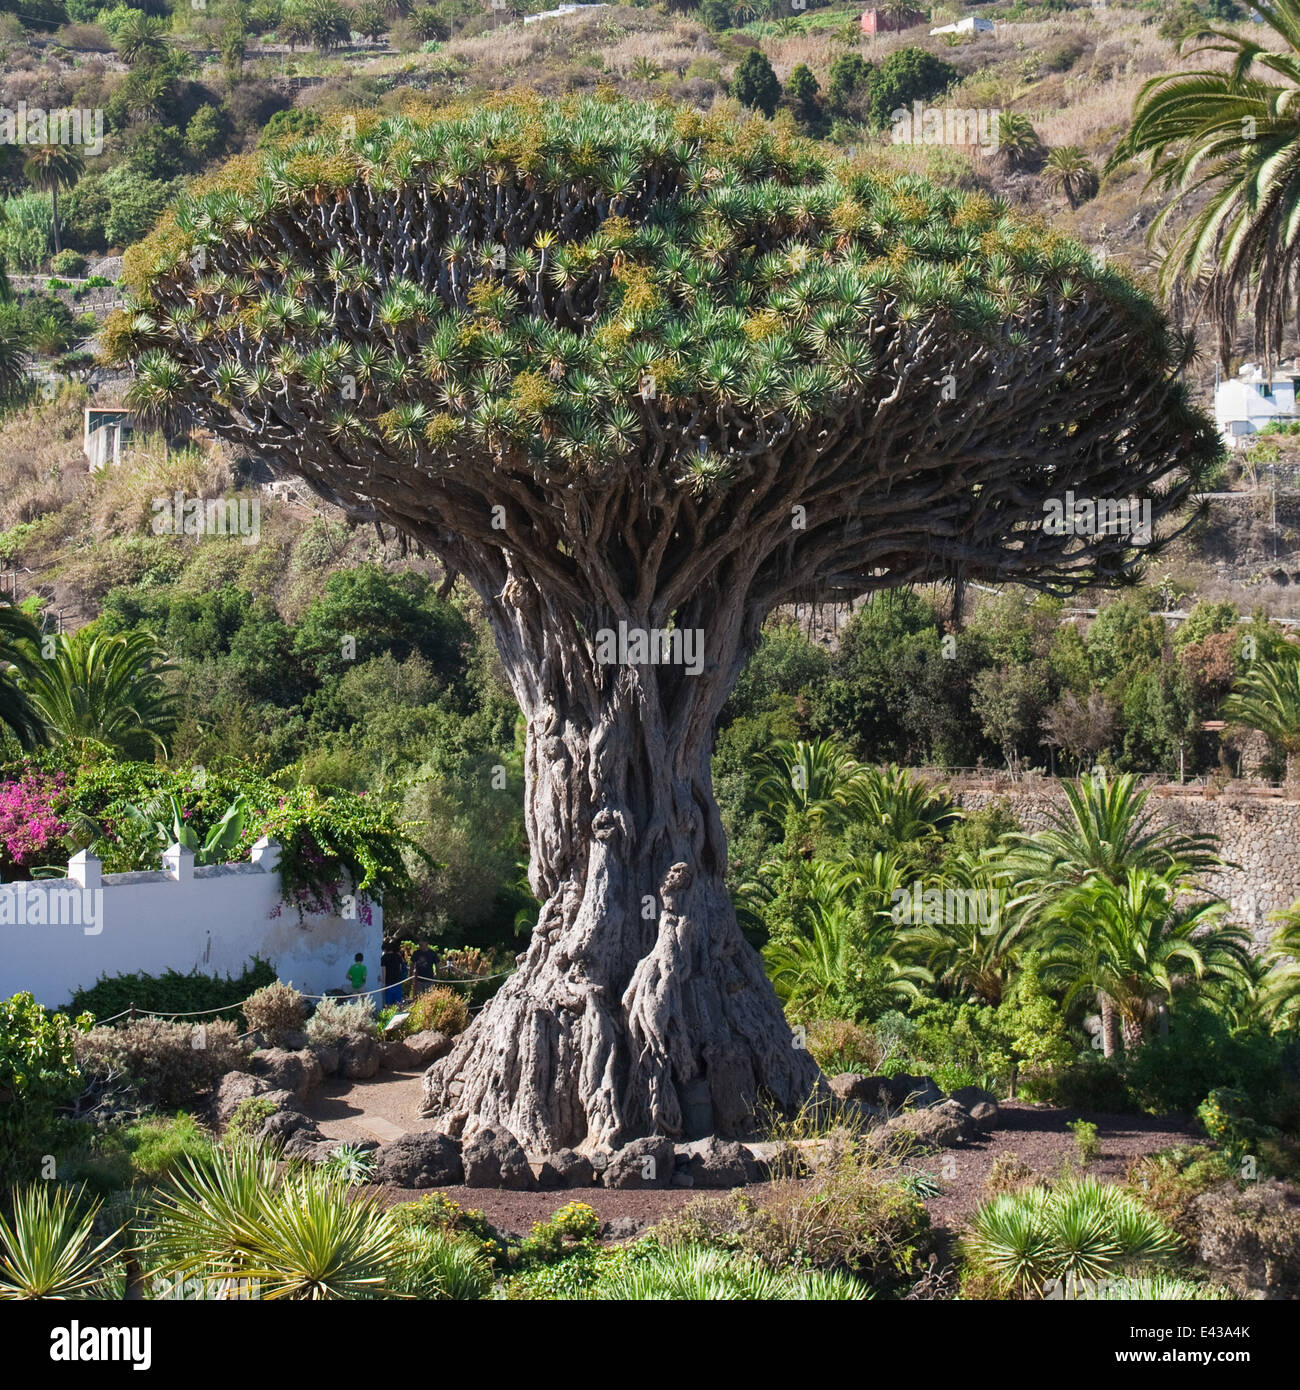 Famous Drago Milenario (Millennial Dragon Tree) of Icod de los Vinos in Tenerife, Canary Islands, Spain. Stock Photo